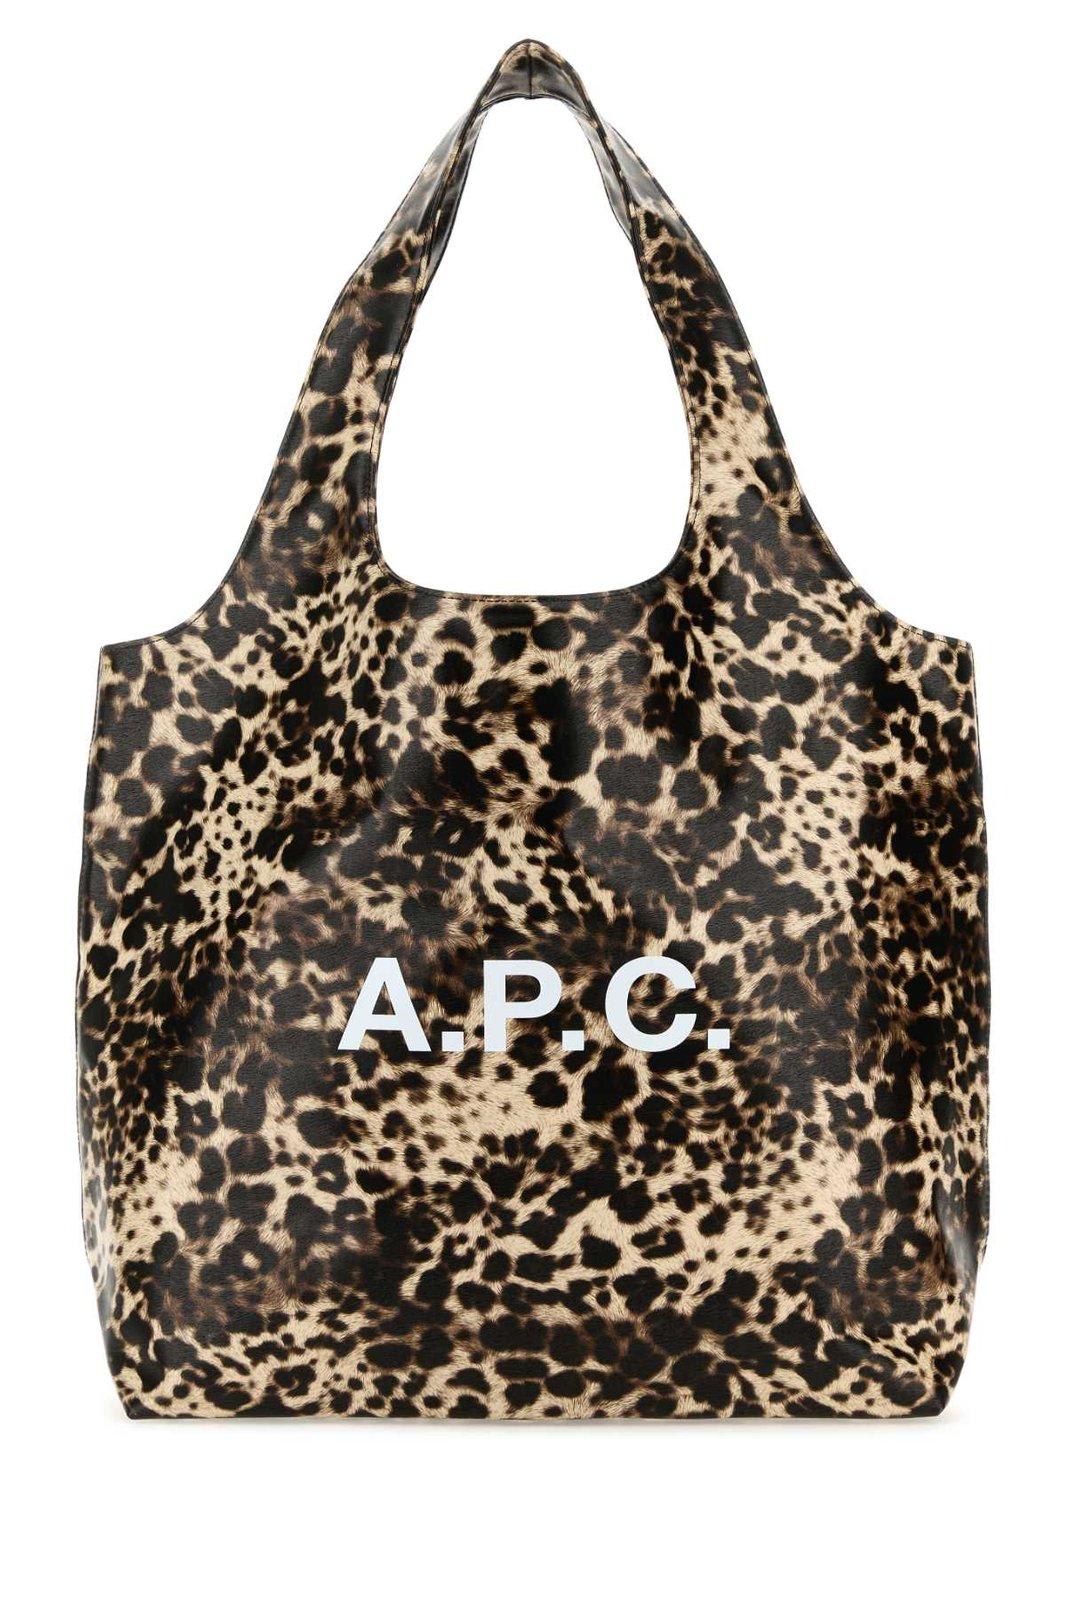 Apc Leopard Patterned Logo Printed Shoulder Bag In Marrone